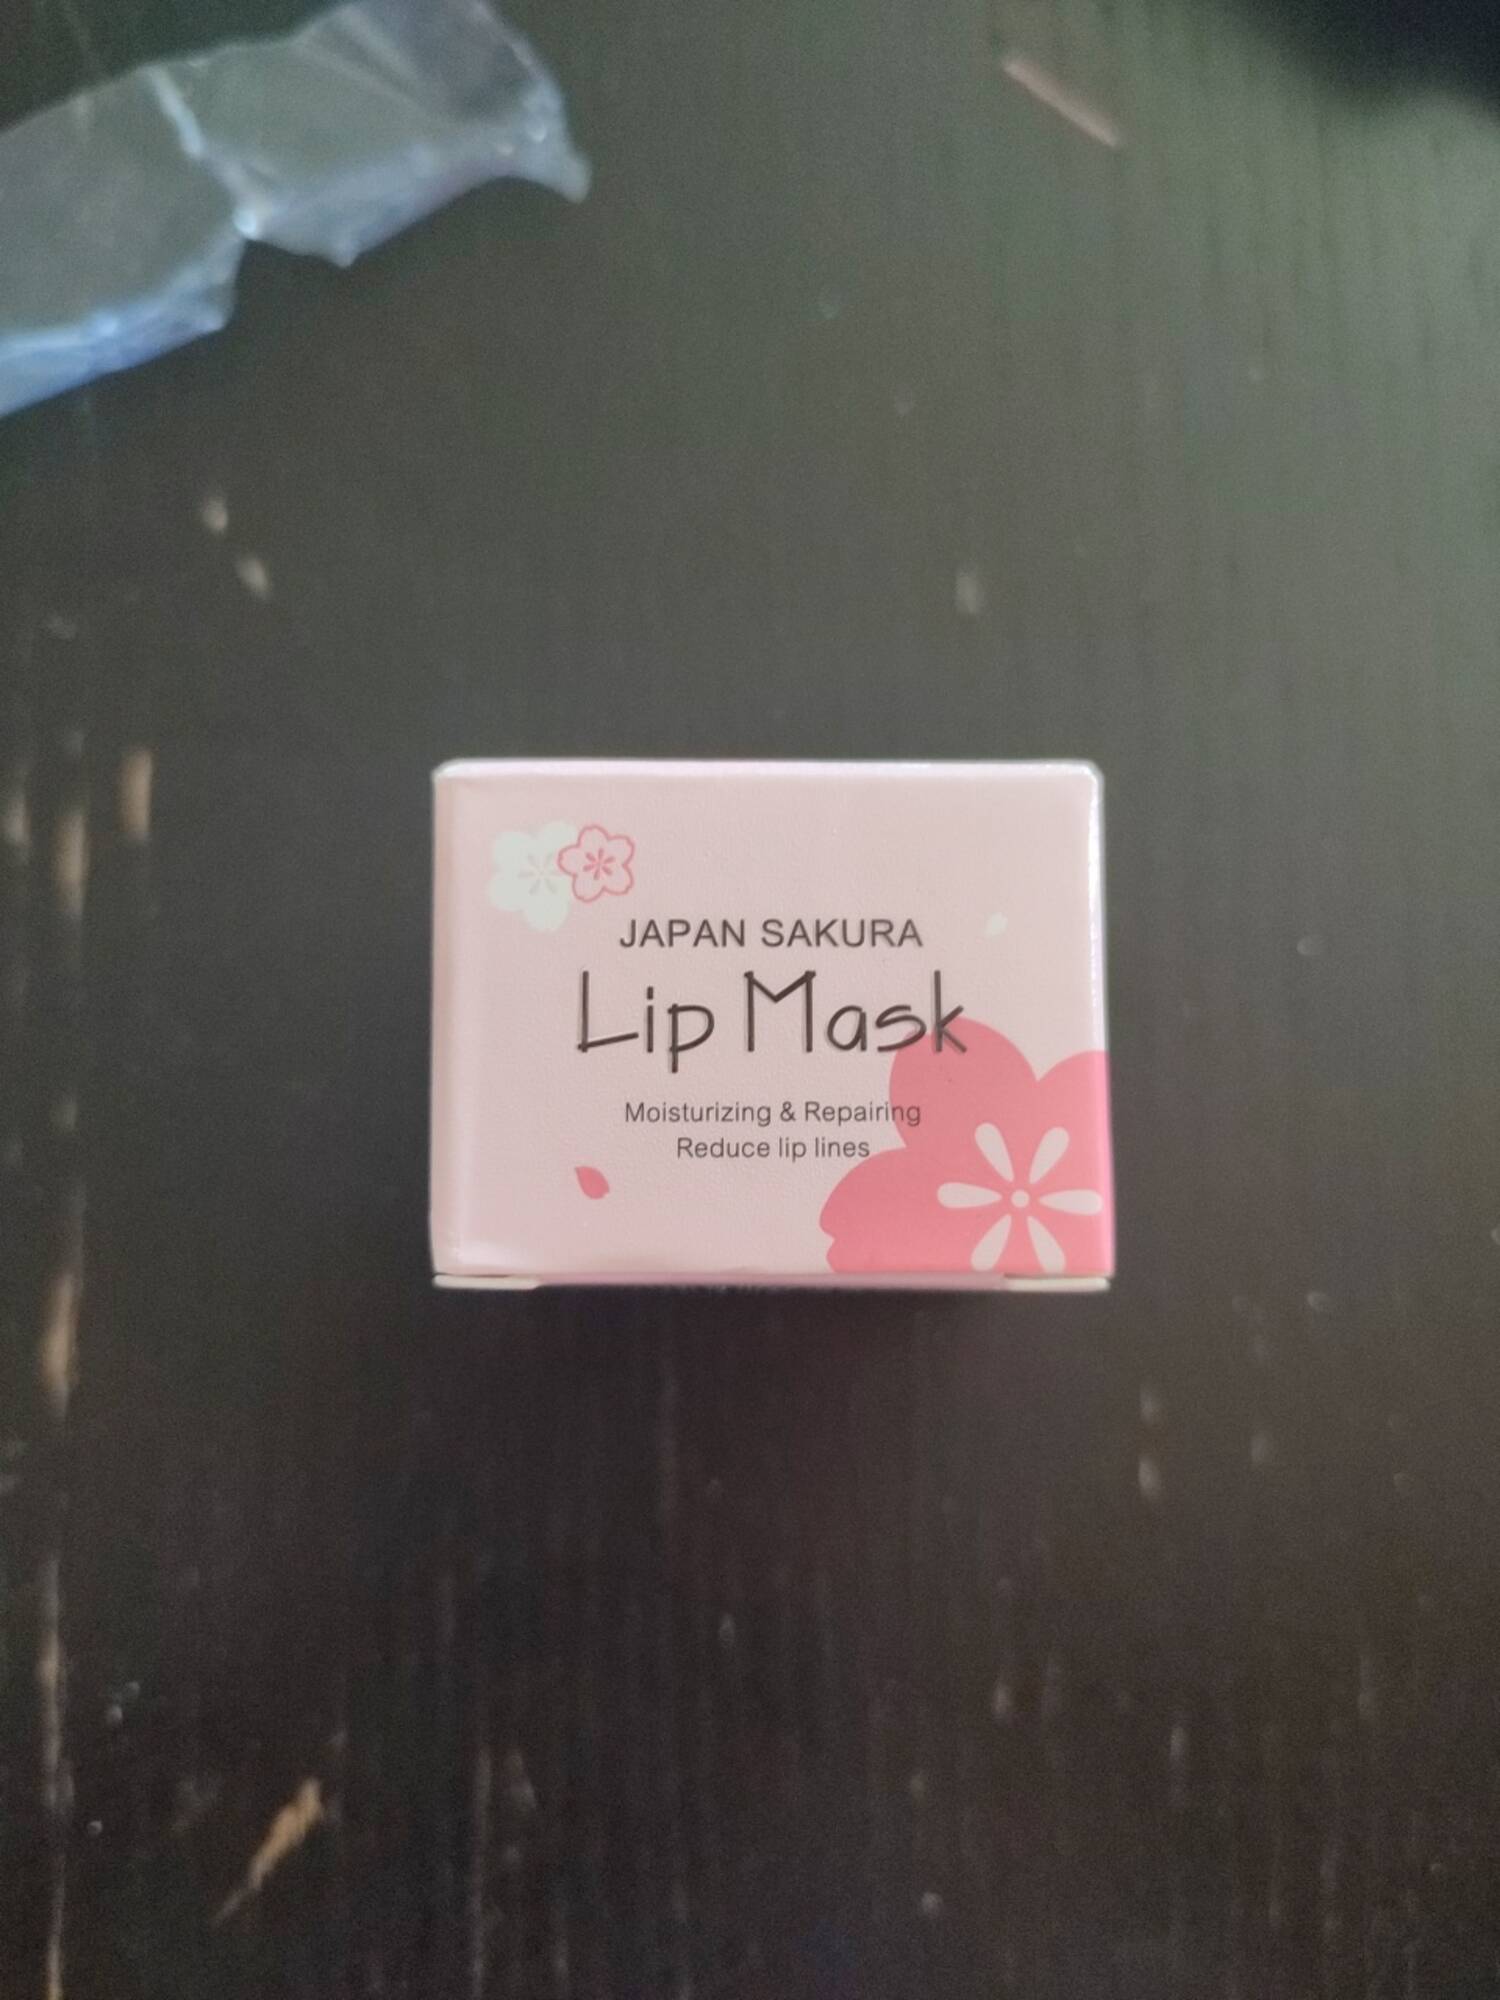 LAIKOU - Japan sakura - Lip mask moisturizing & repairing